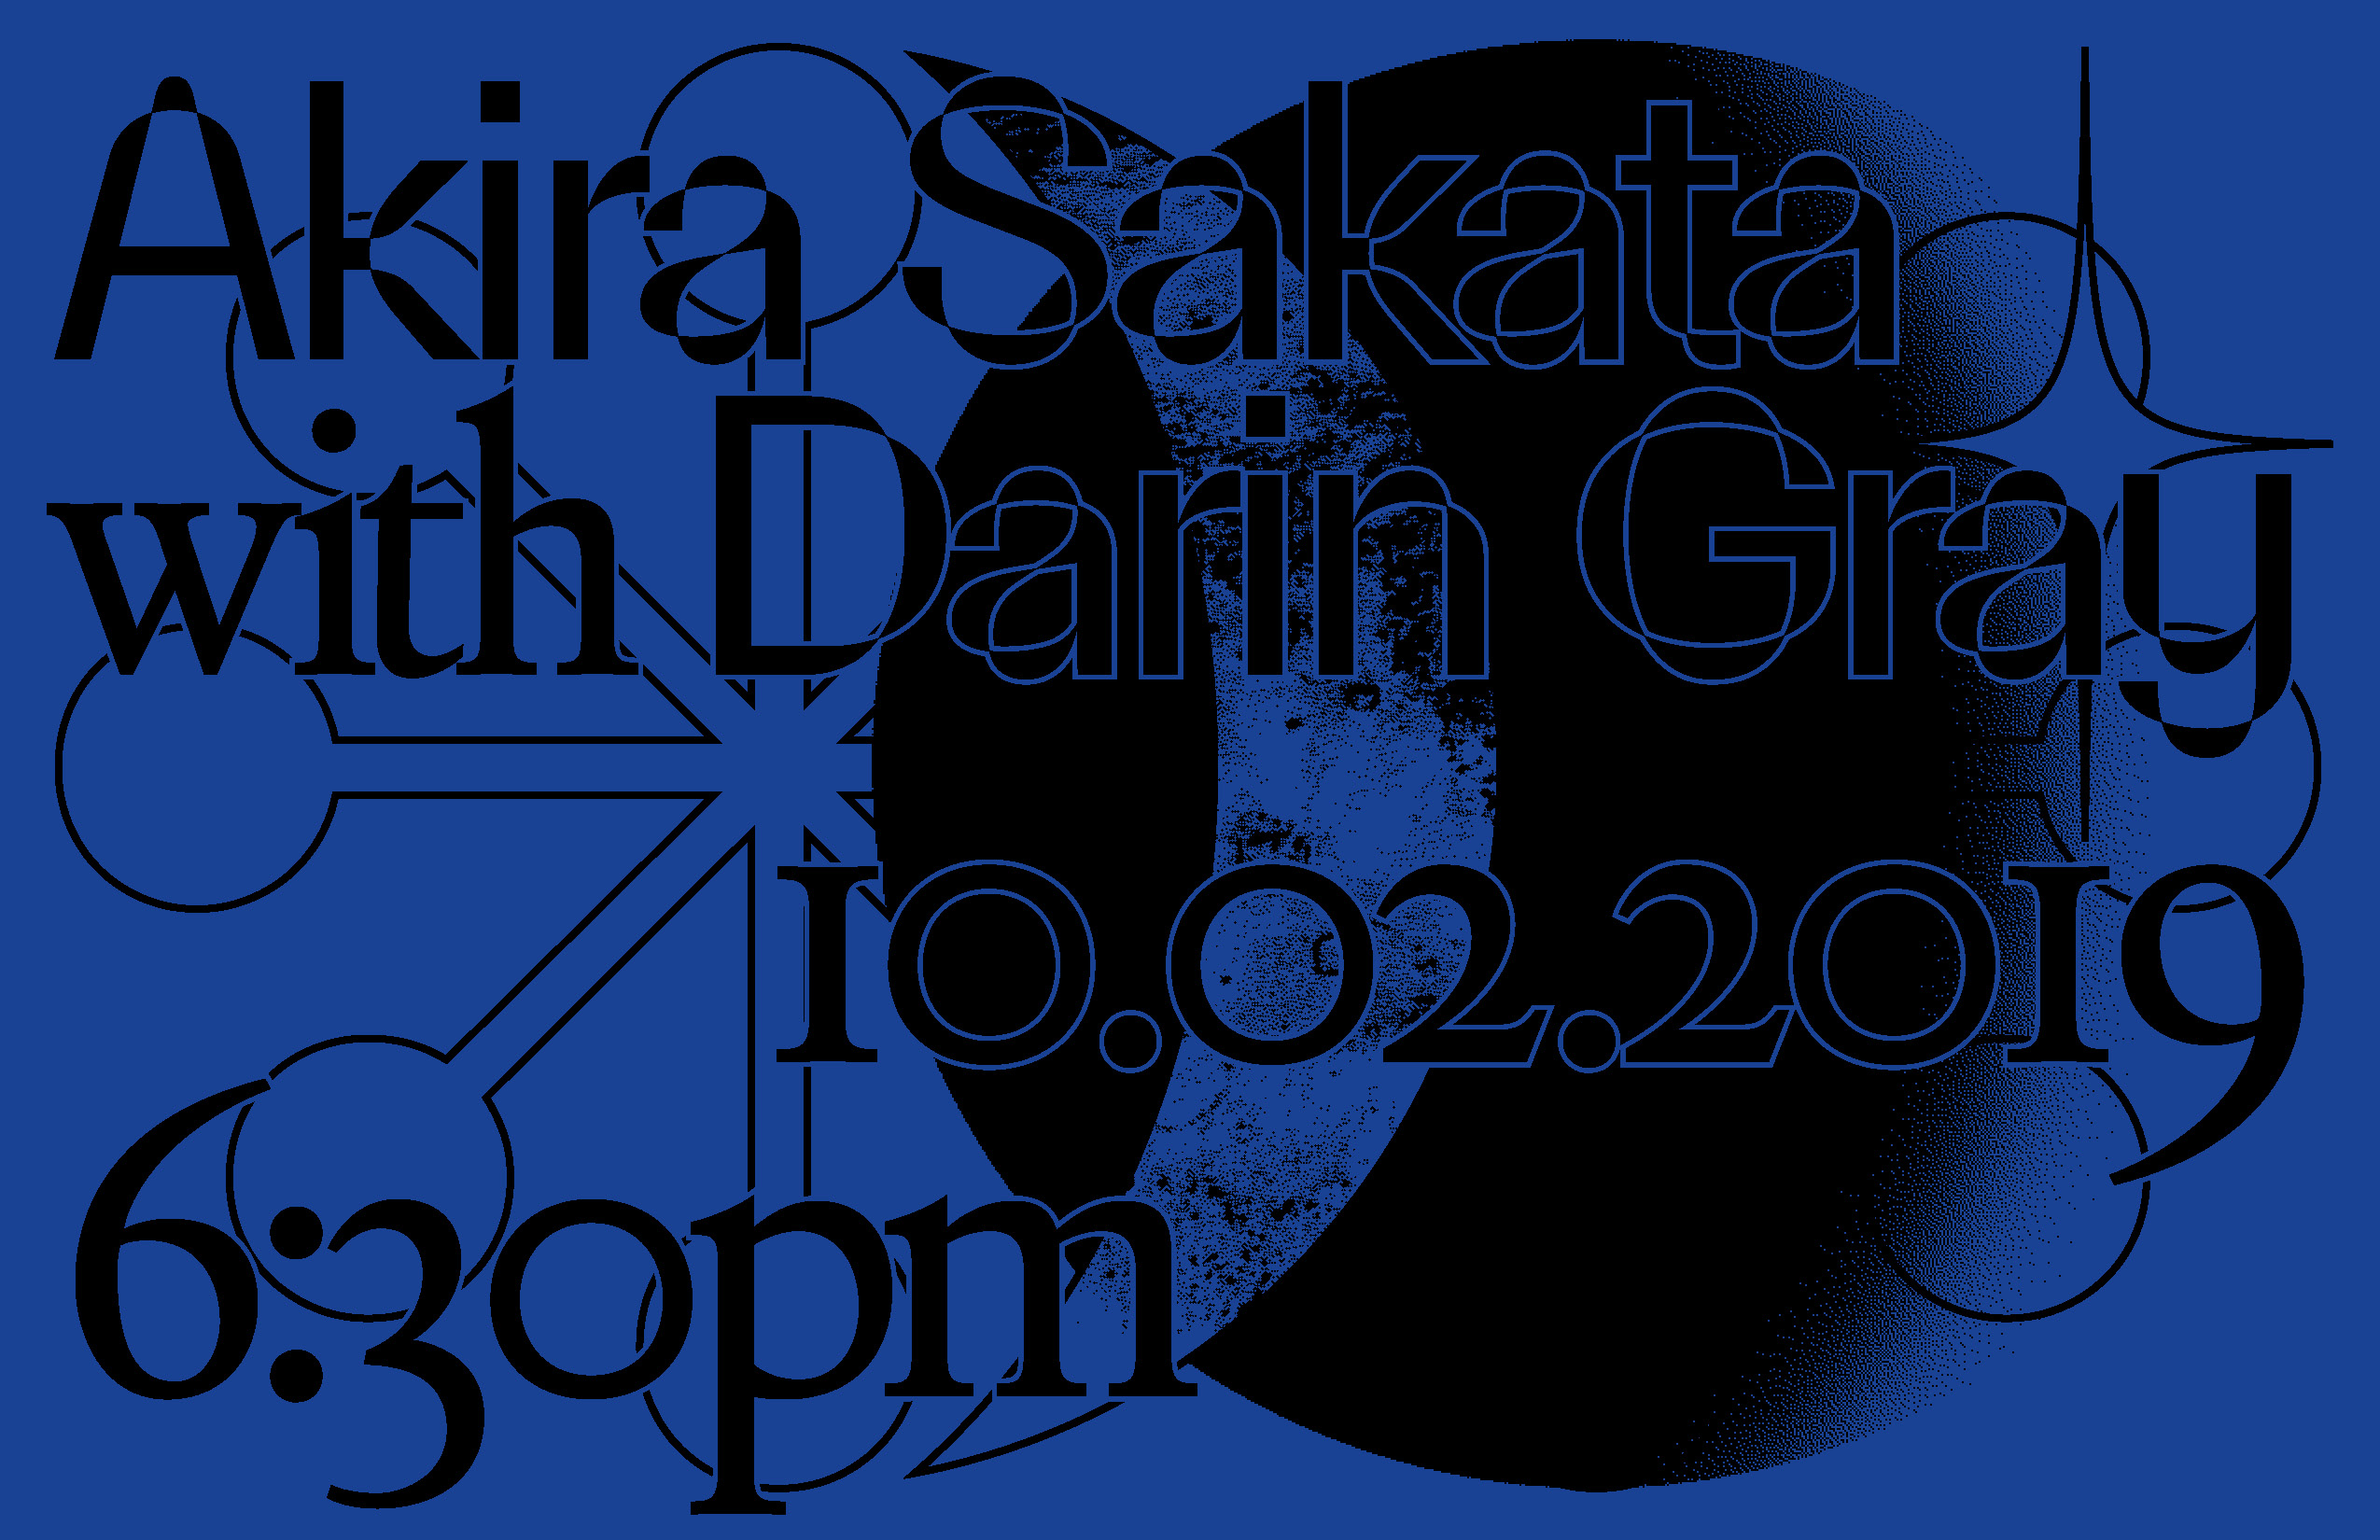 Akira Sakata with Darin Gray at James Cohan Gallery